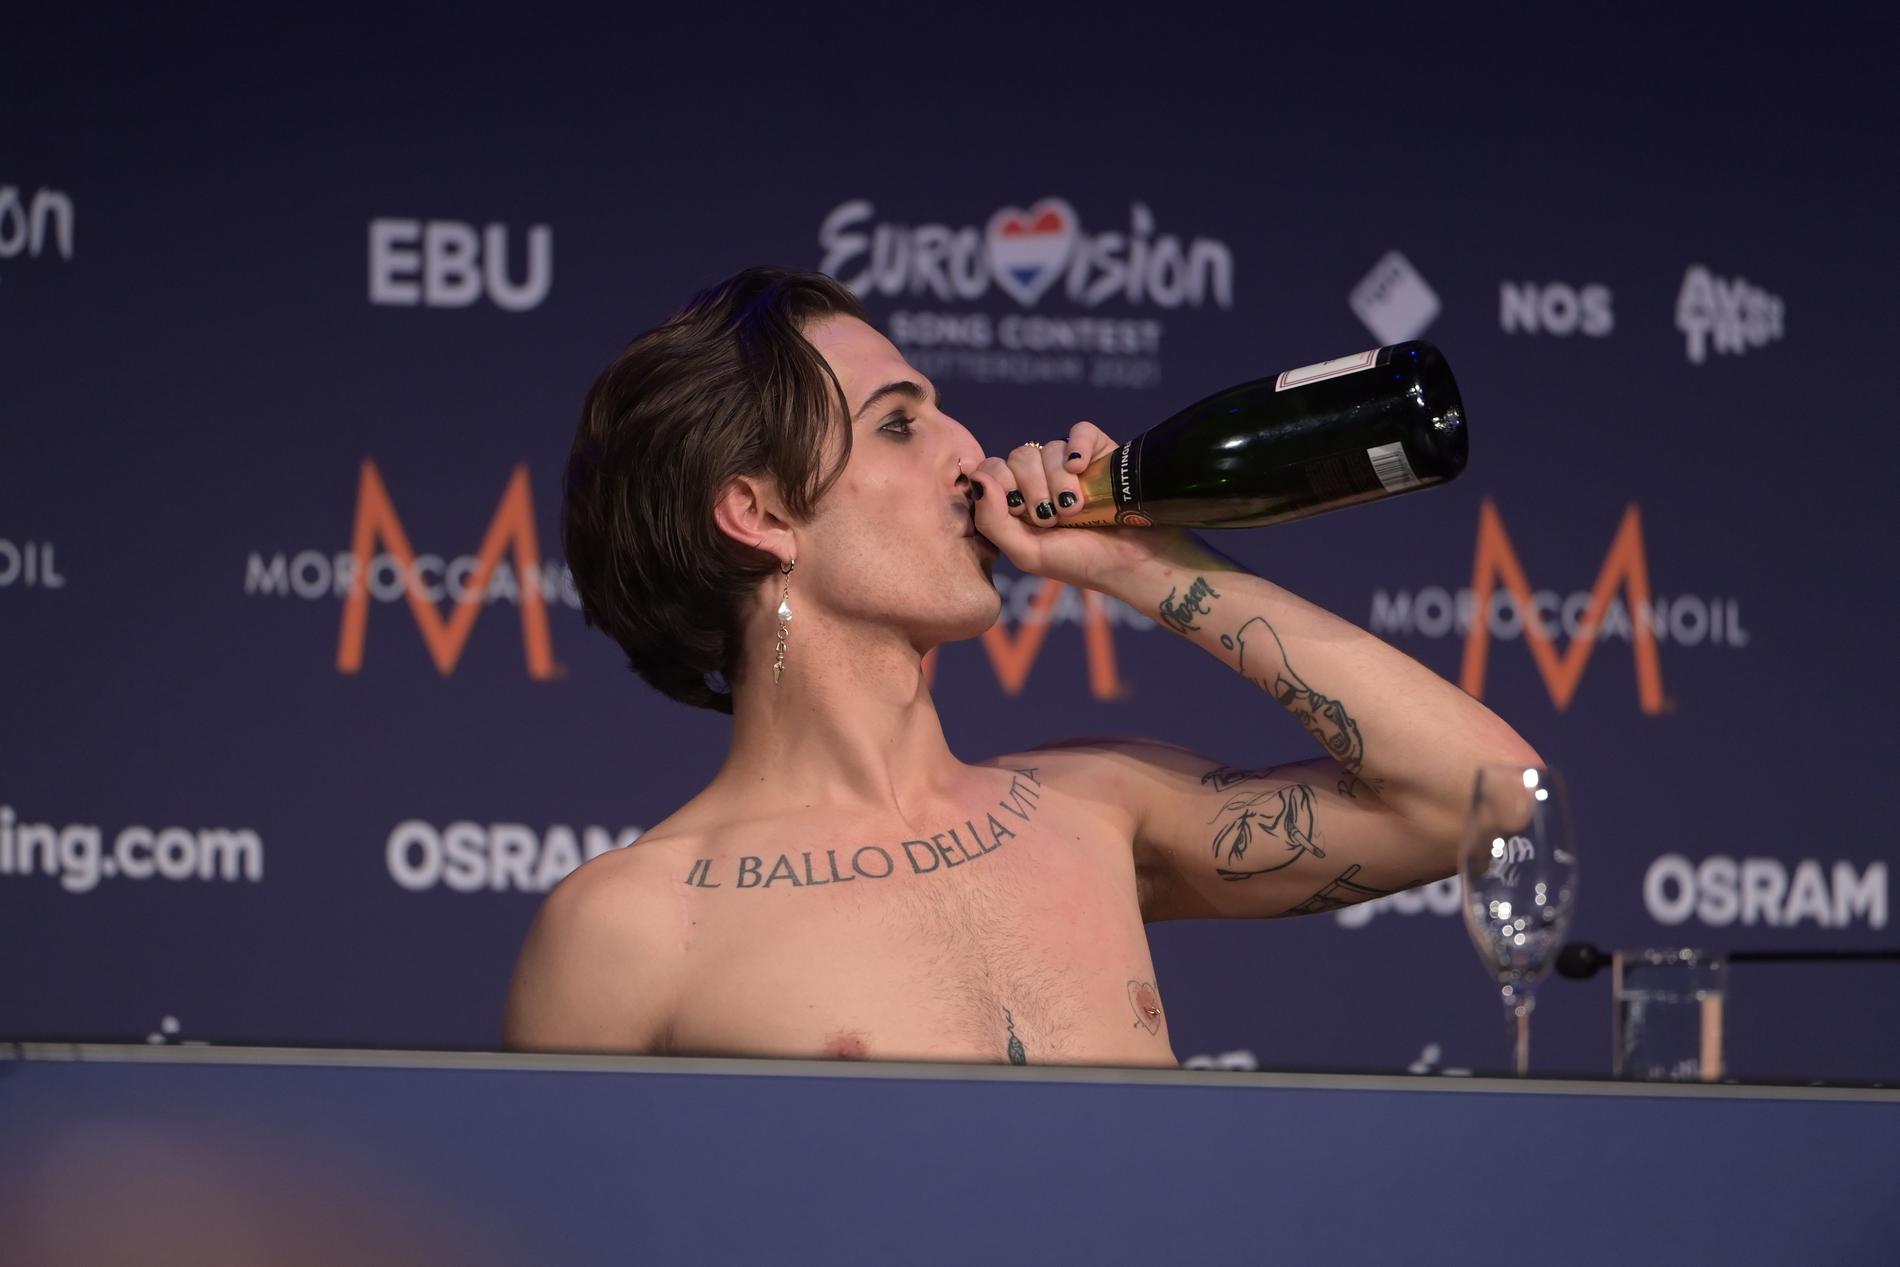 Måneskins Damiano David firar med att klunka champagne på presskonferensen.